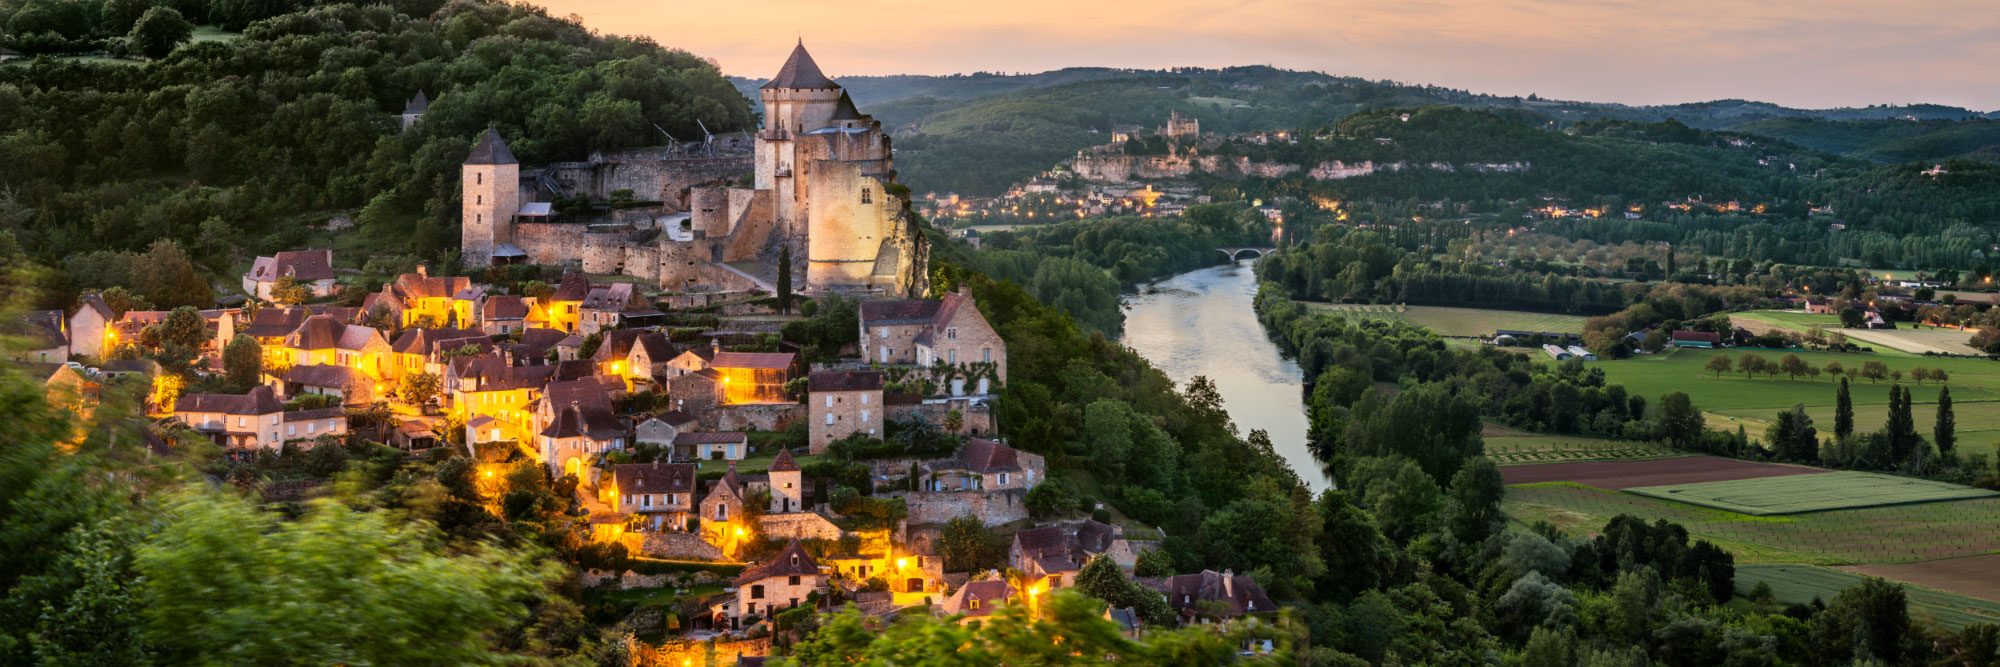 Comment bien préparer votre séjour en Dordogne ?